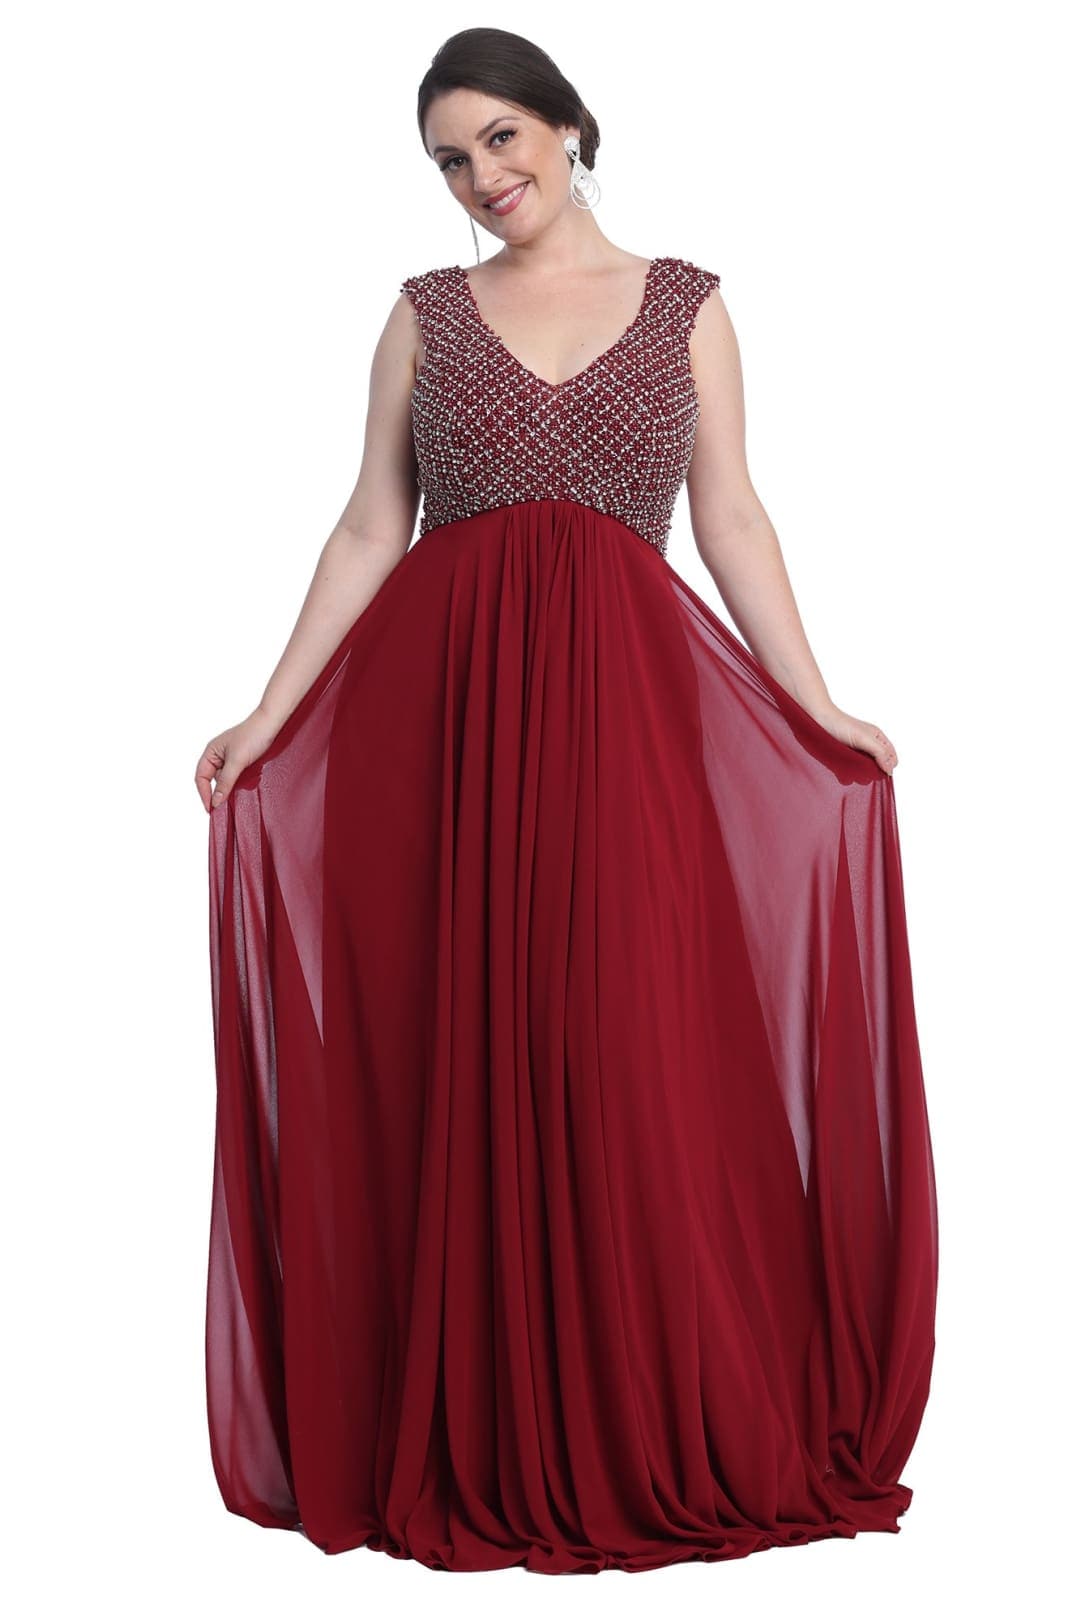 Jewel Adorned Prom Dress - Burgundy / 4